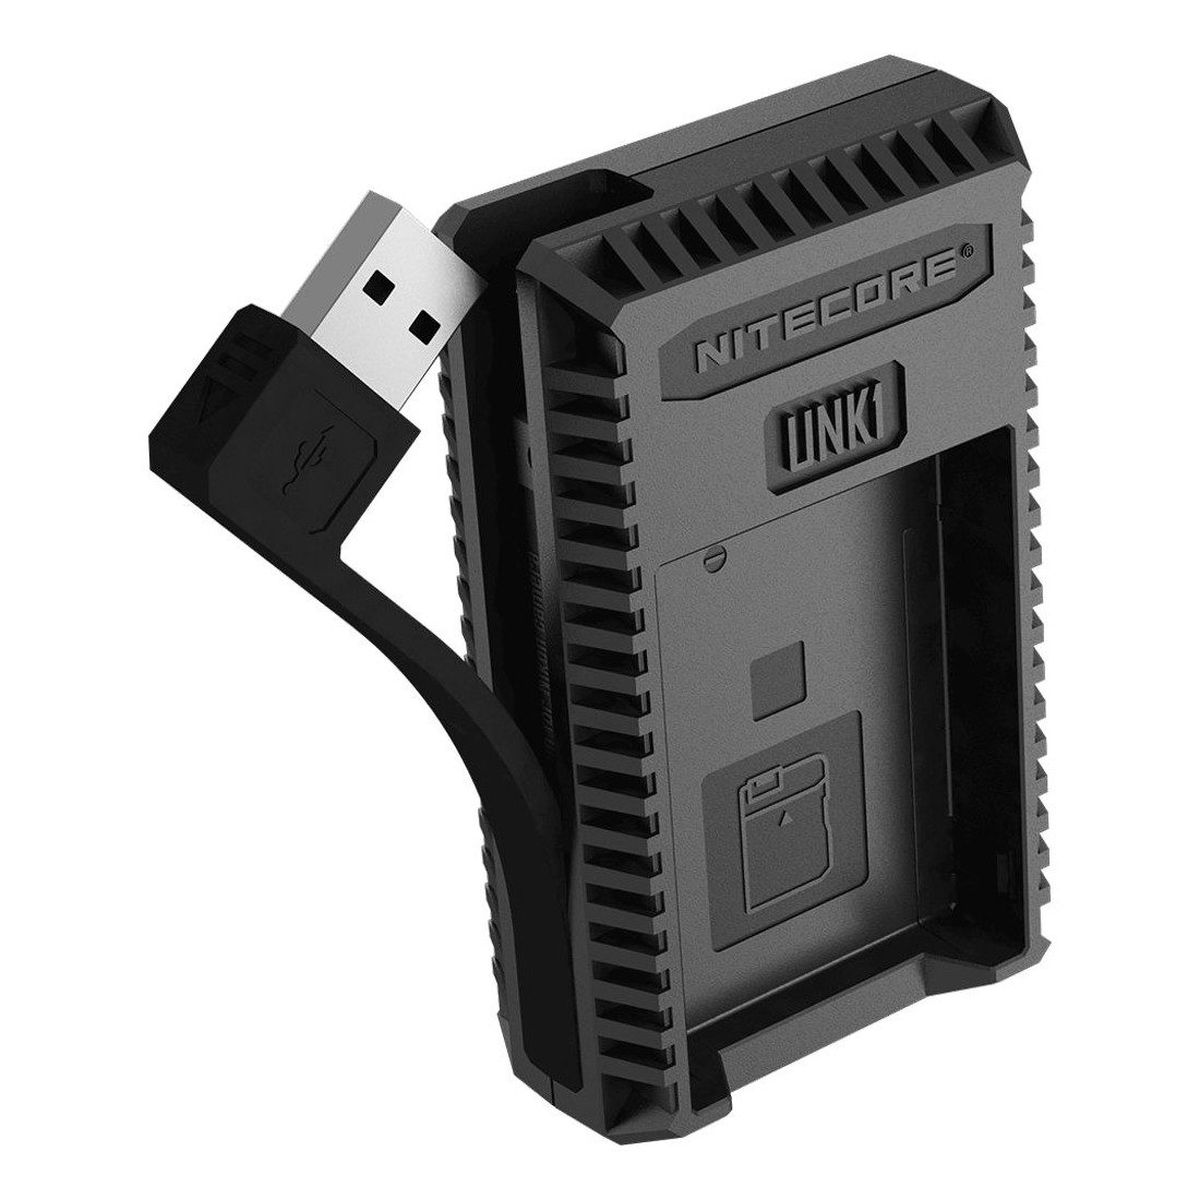 Nitecore UNK1 Ladegerät für Nikon EN-EL15 (A) + EN-EL14 (A) mit Anzeige + USB